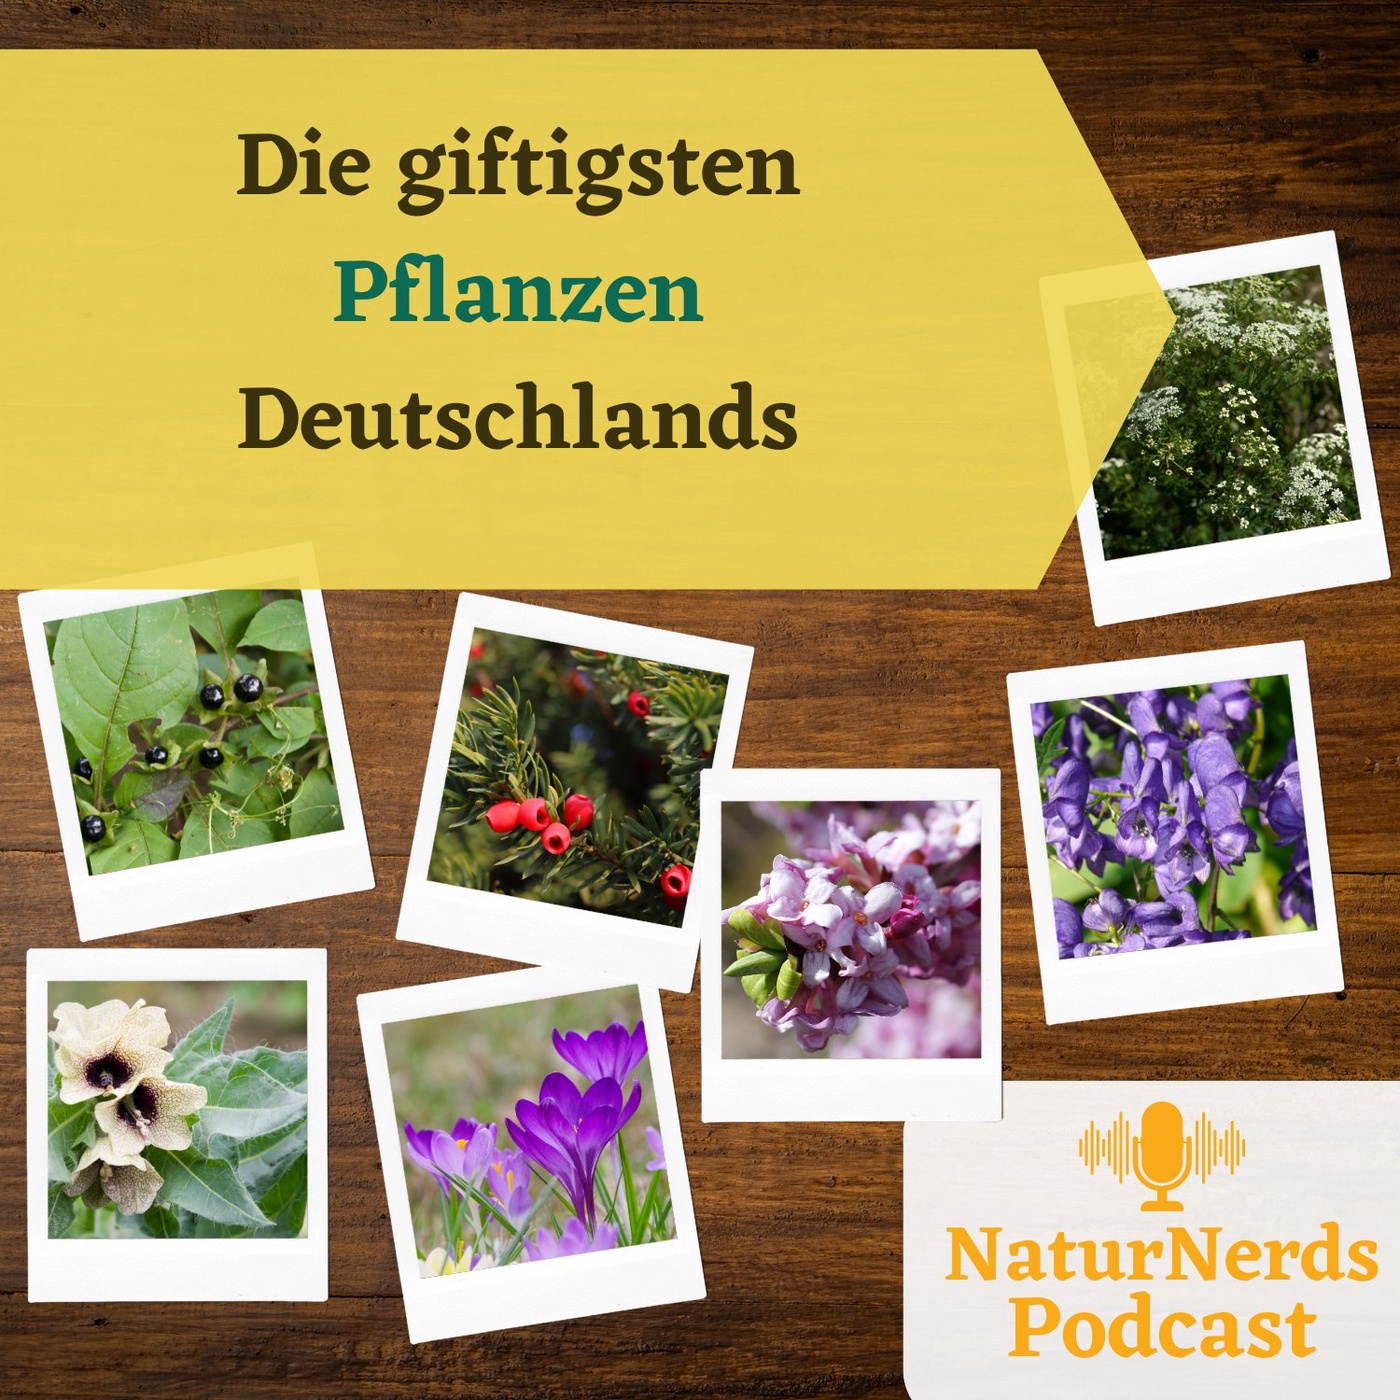 Die giftigsten Pflanzen Deutschlands